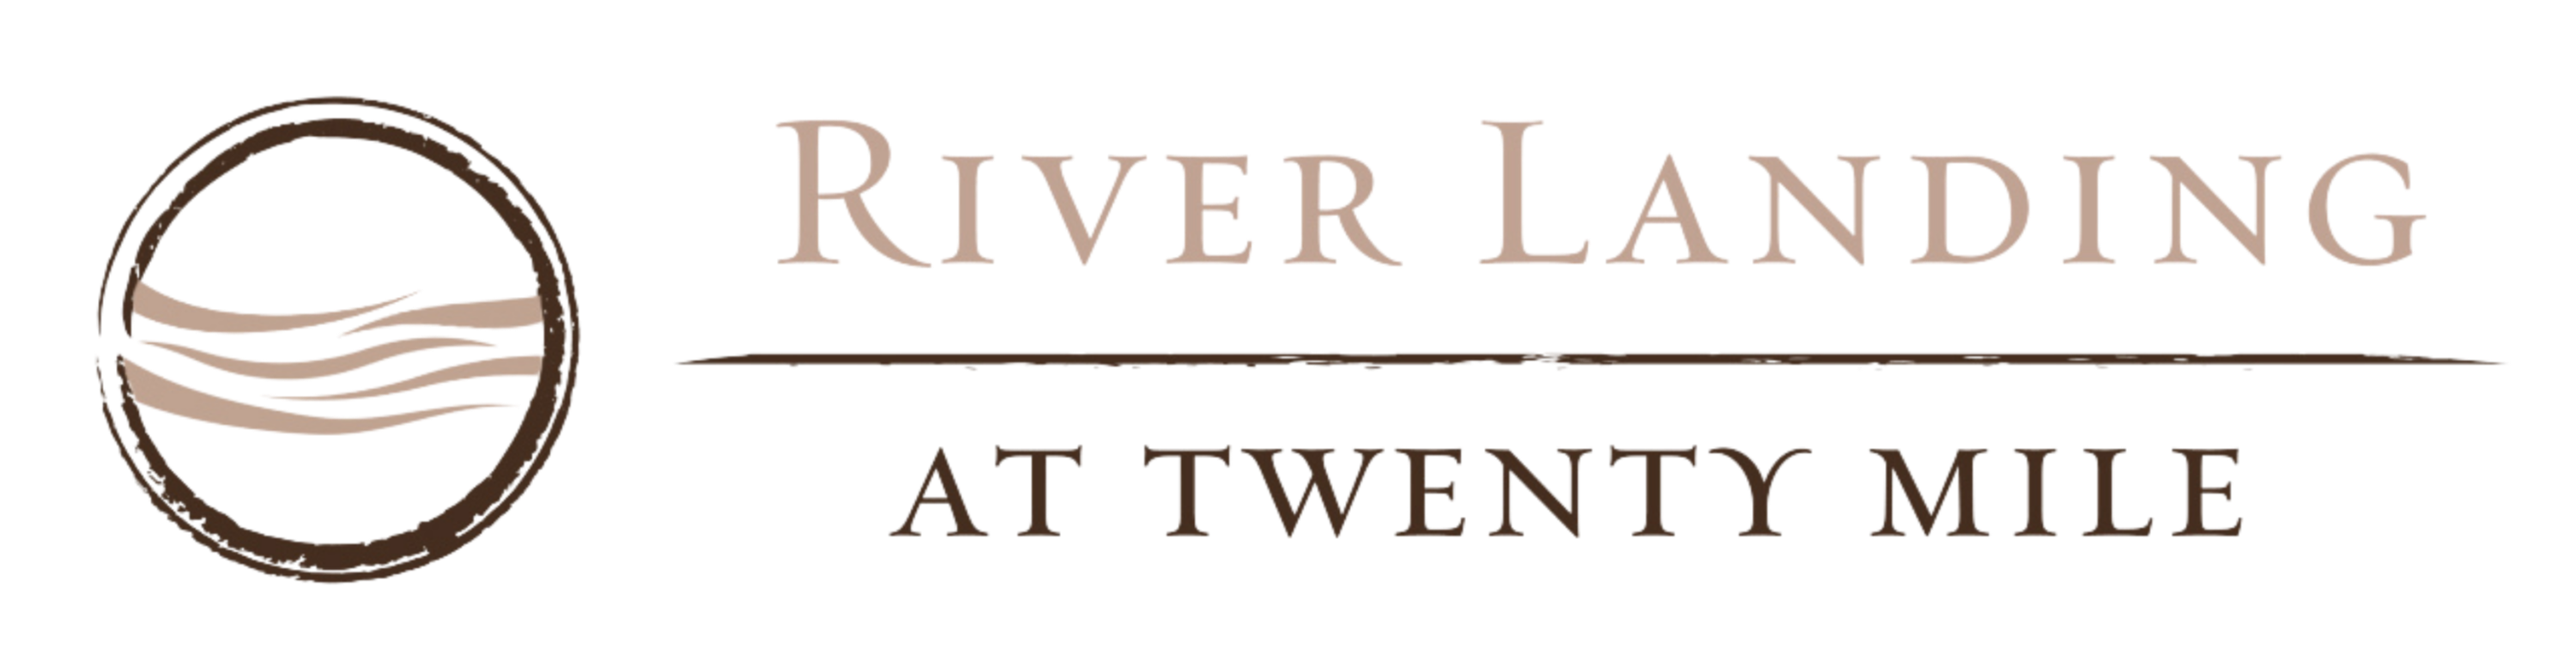 River Landing logo